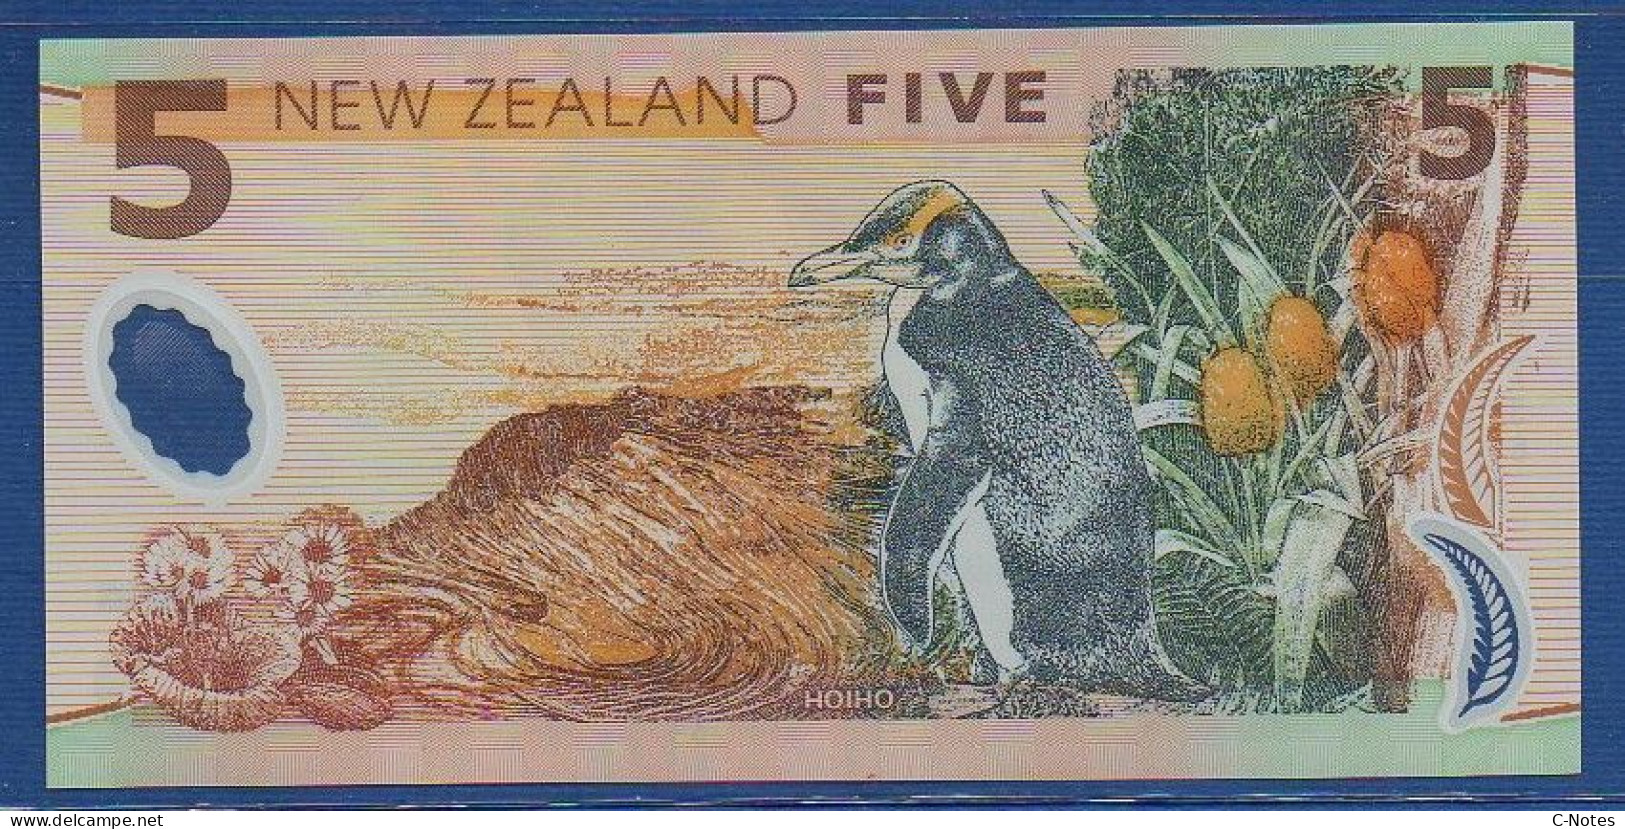 NEW ZEALAND  - P.185a – 5 Dollars 1999 UNC, S/n BK99 465736 - Nueva Zelandía